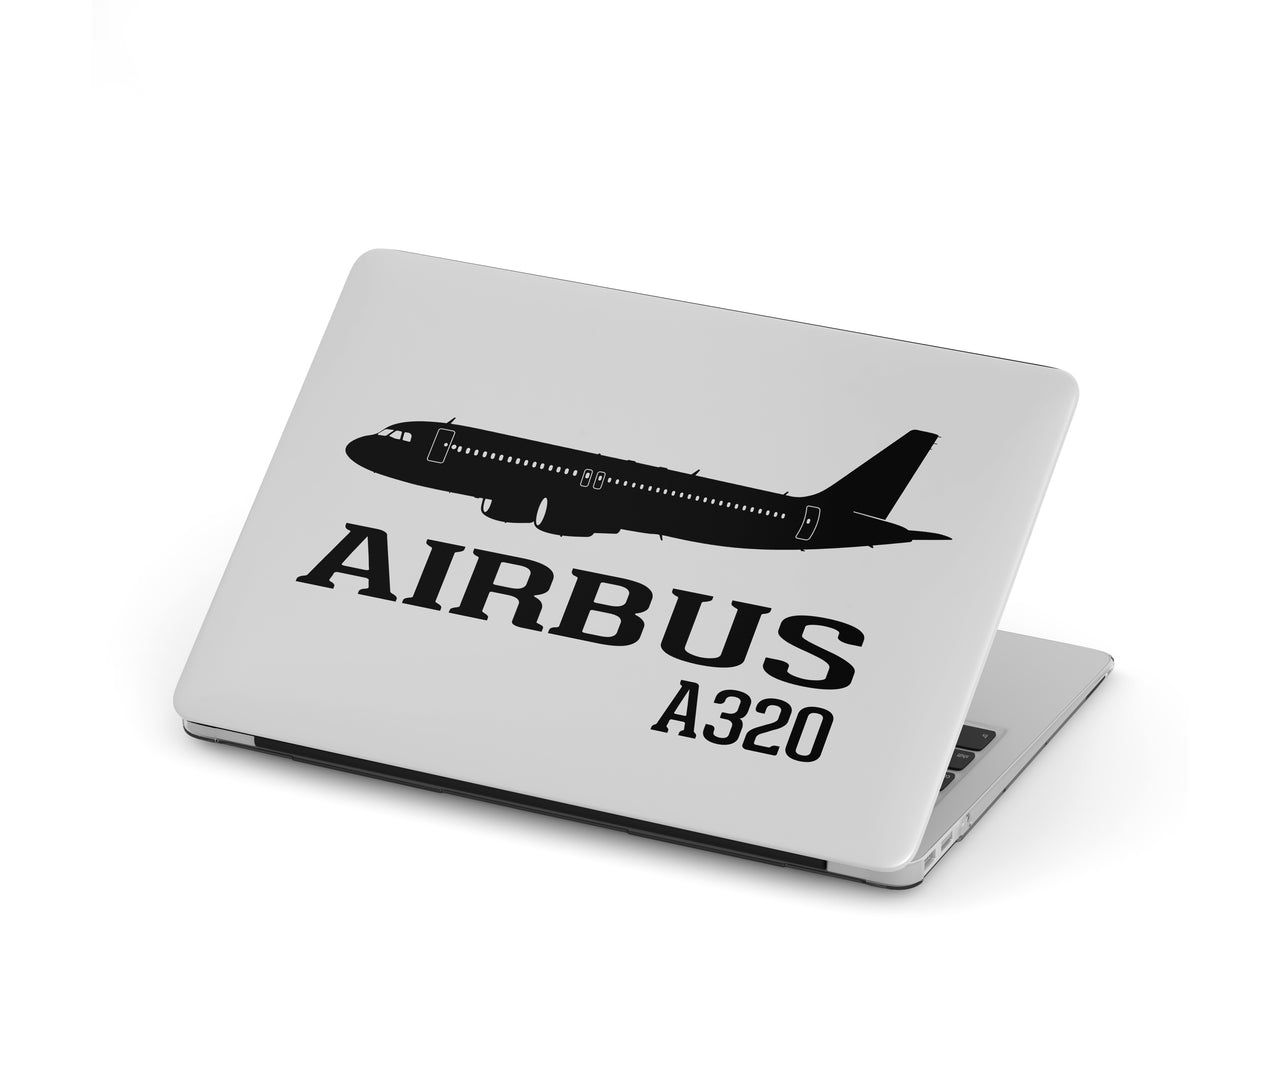 Airbus A320 Printed Designed Macbook Cases